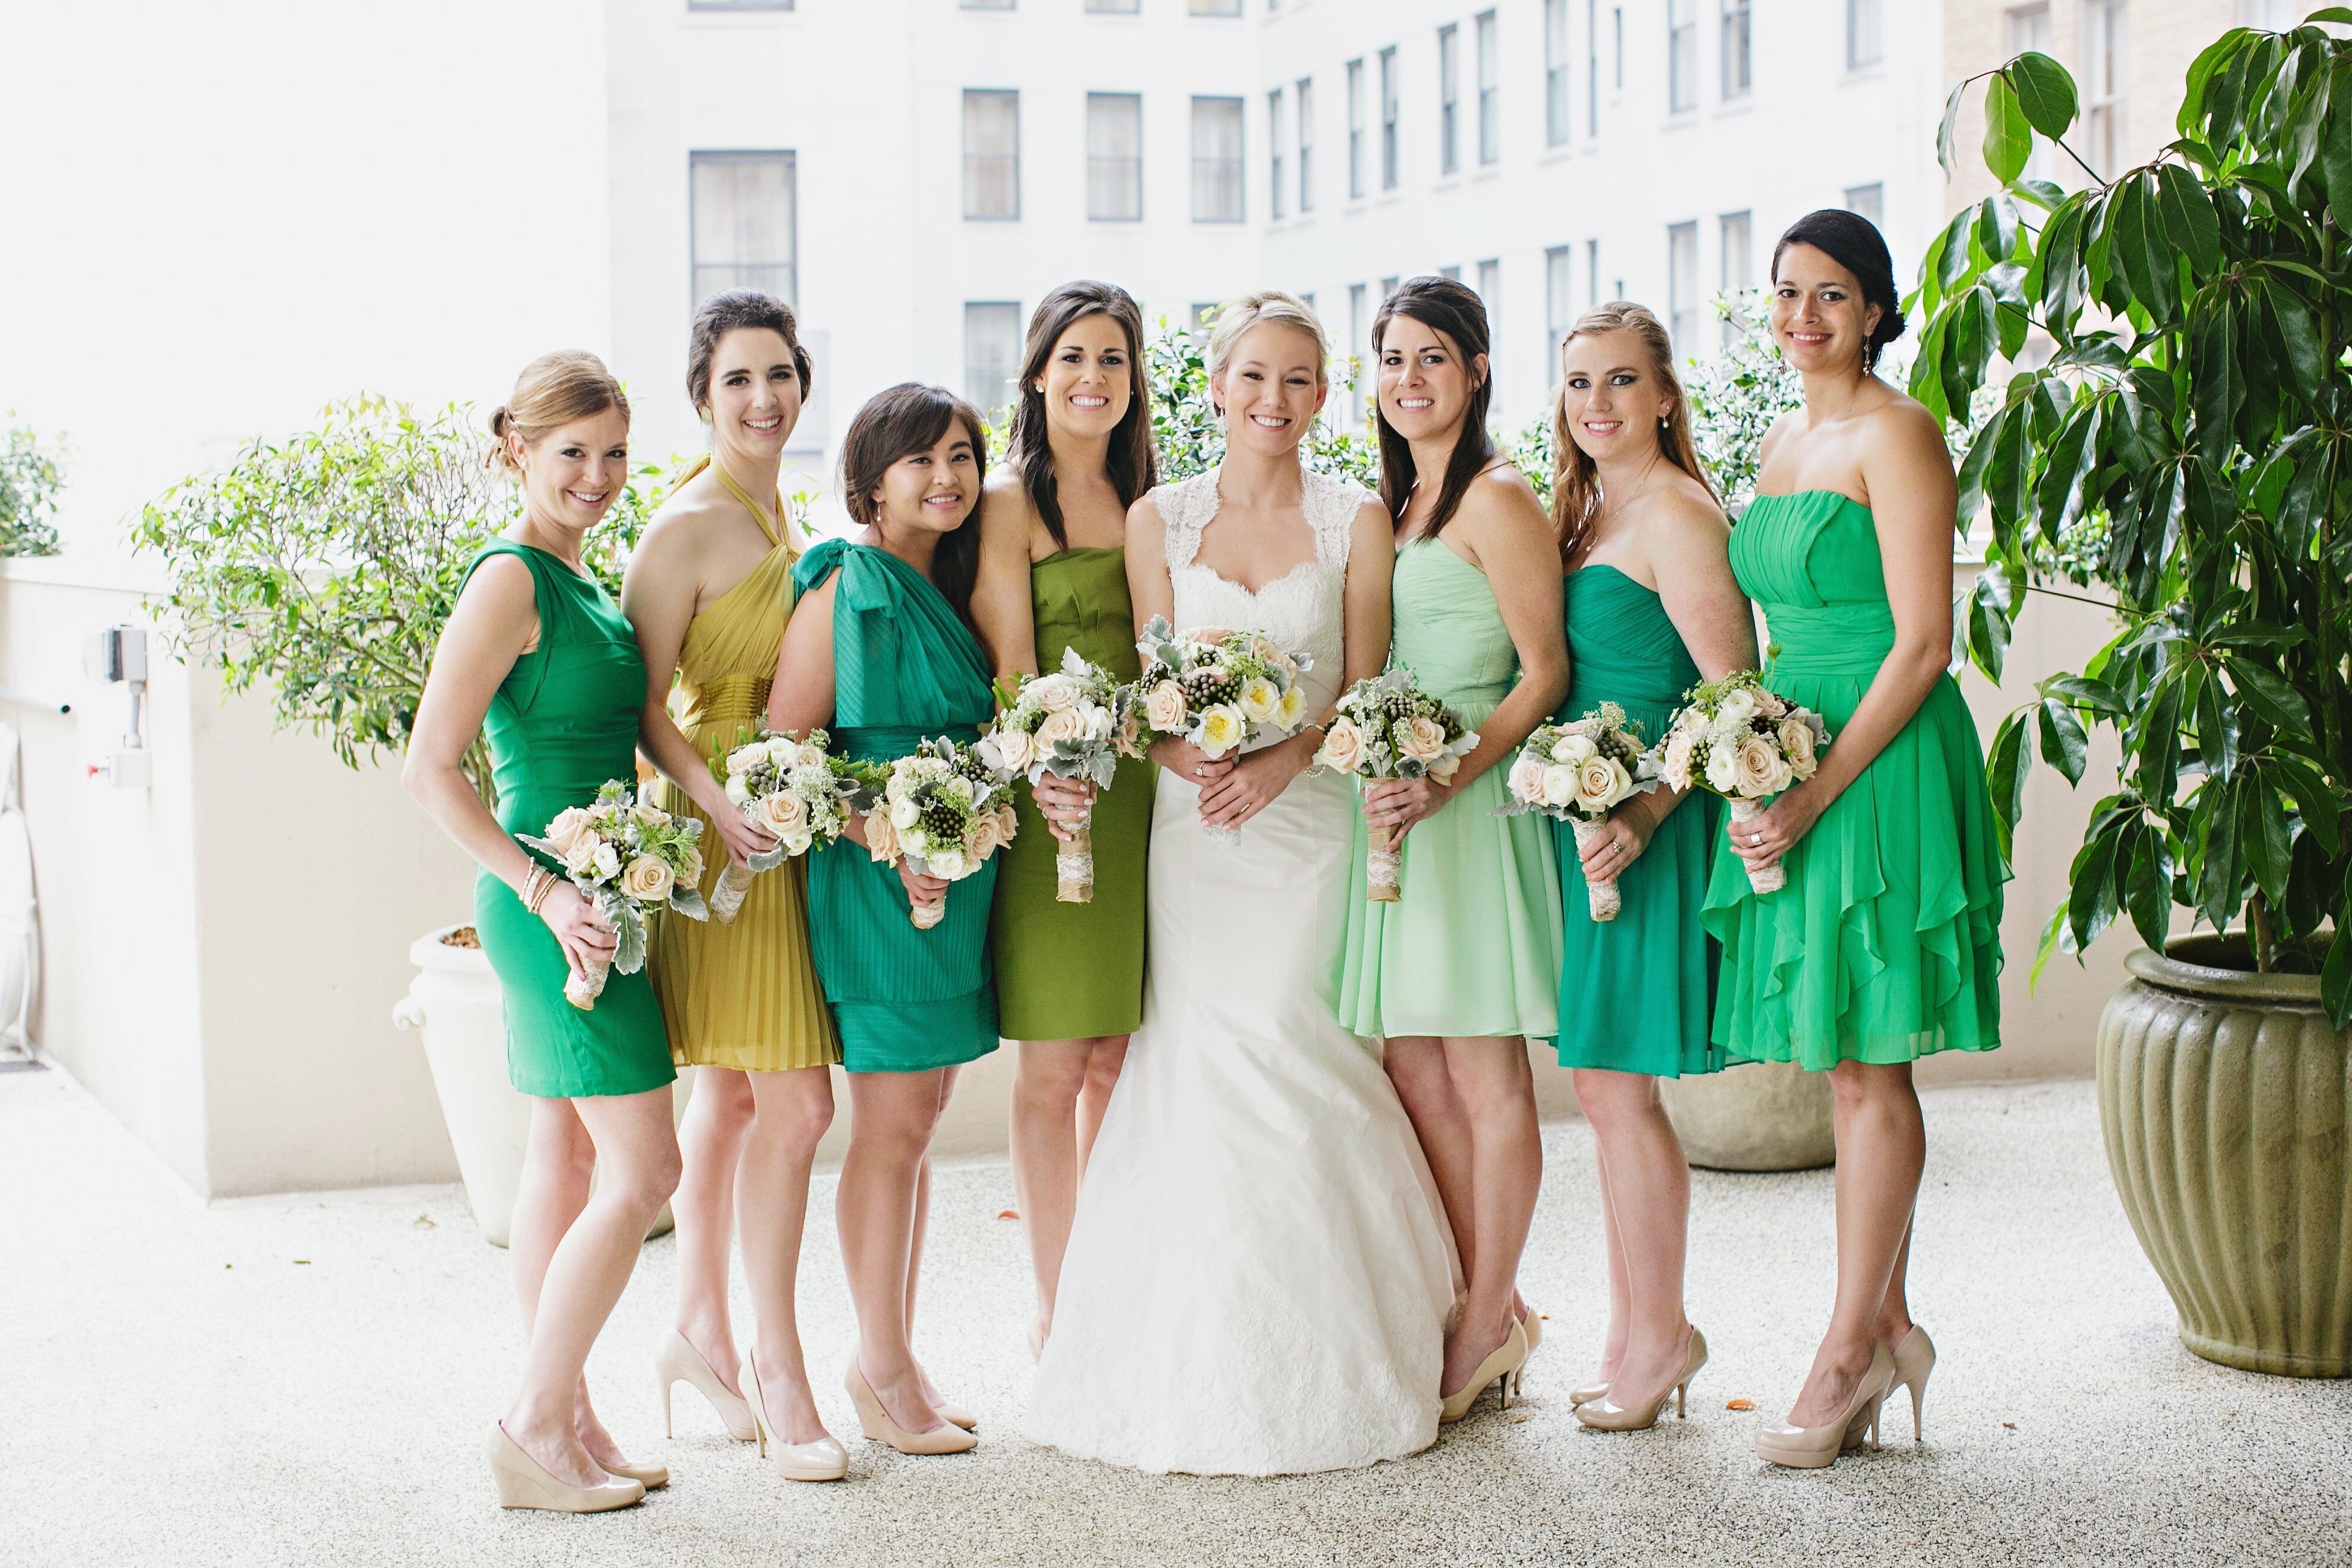 Цвет свадьбы фото. Изумрудные платья подружек невесты. Свадьба в зеленых тонах. Платье на свадьбу для гостей. Подружки невесты в зеленых платьях.